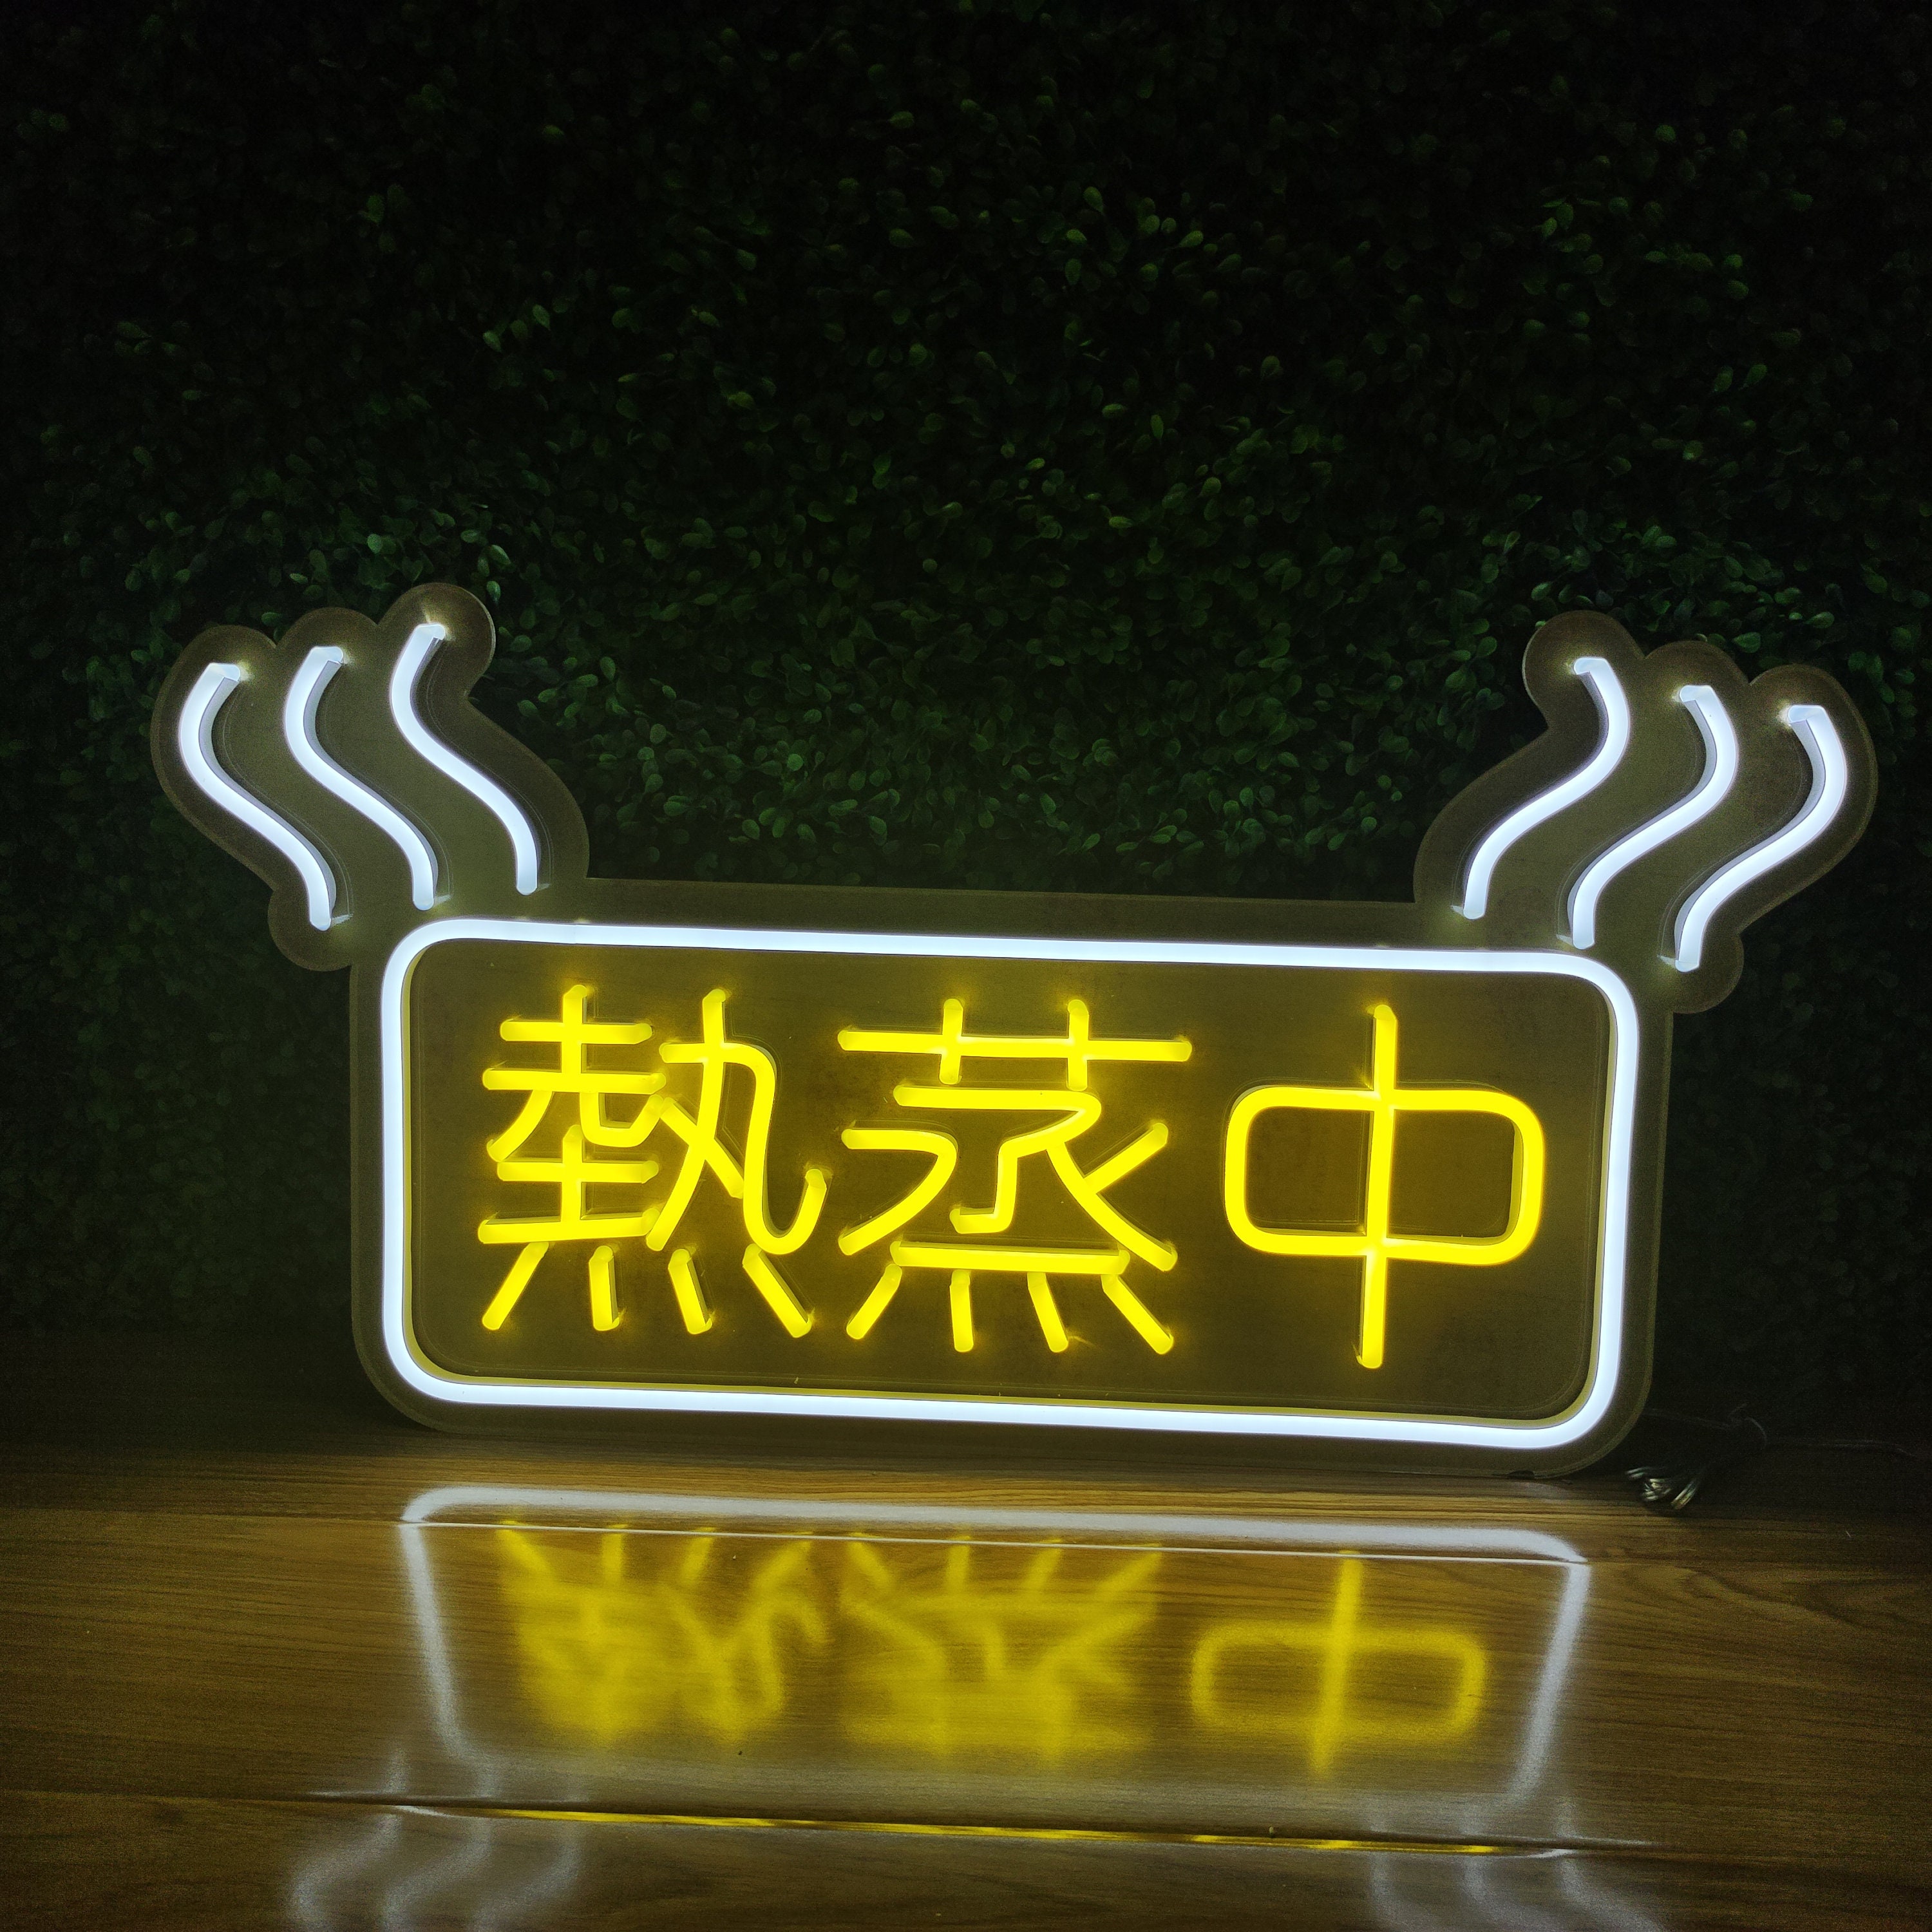 一期一会 LED neon sign Handmade Japanese neon signCustom -  Portugal